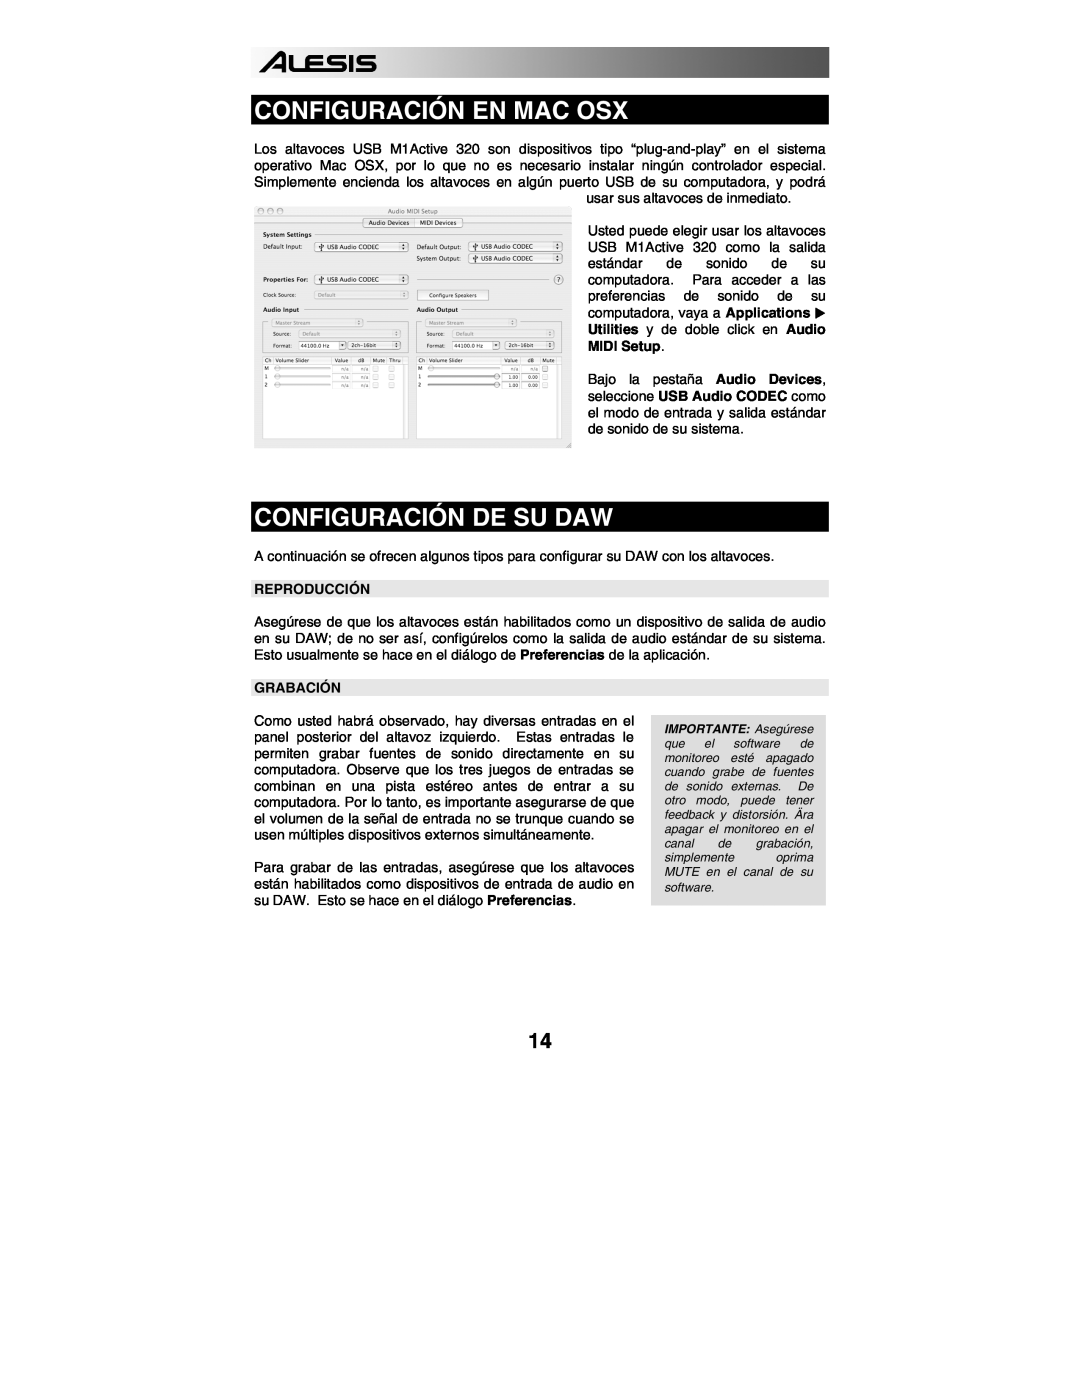 Alesis 320USB quick start Configuración En Mac Osx, Configuración De Su Daw, Reproducción, Grabación 